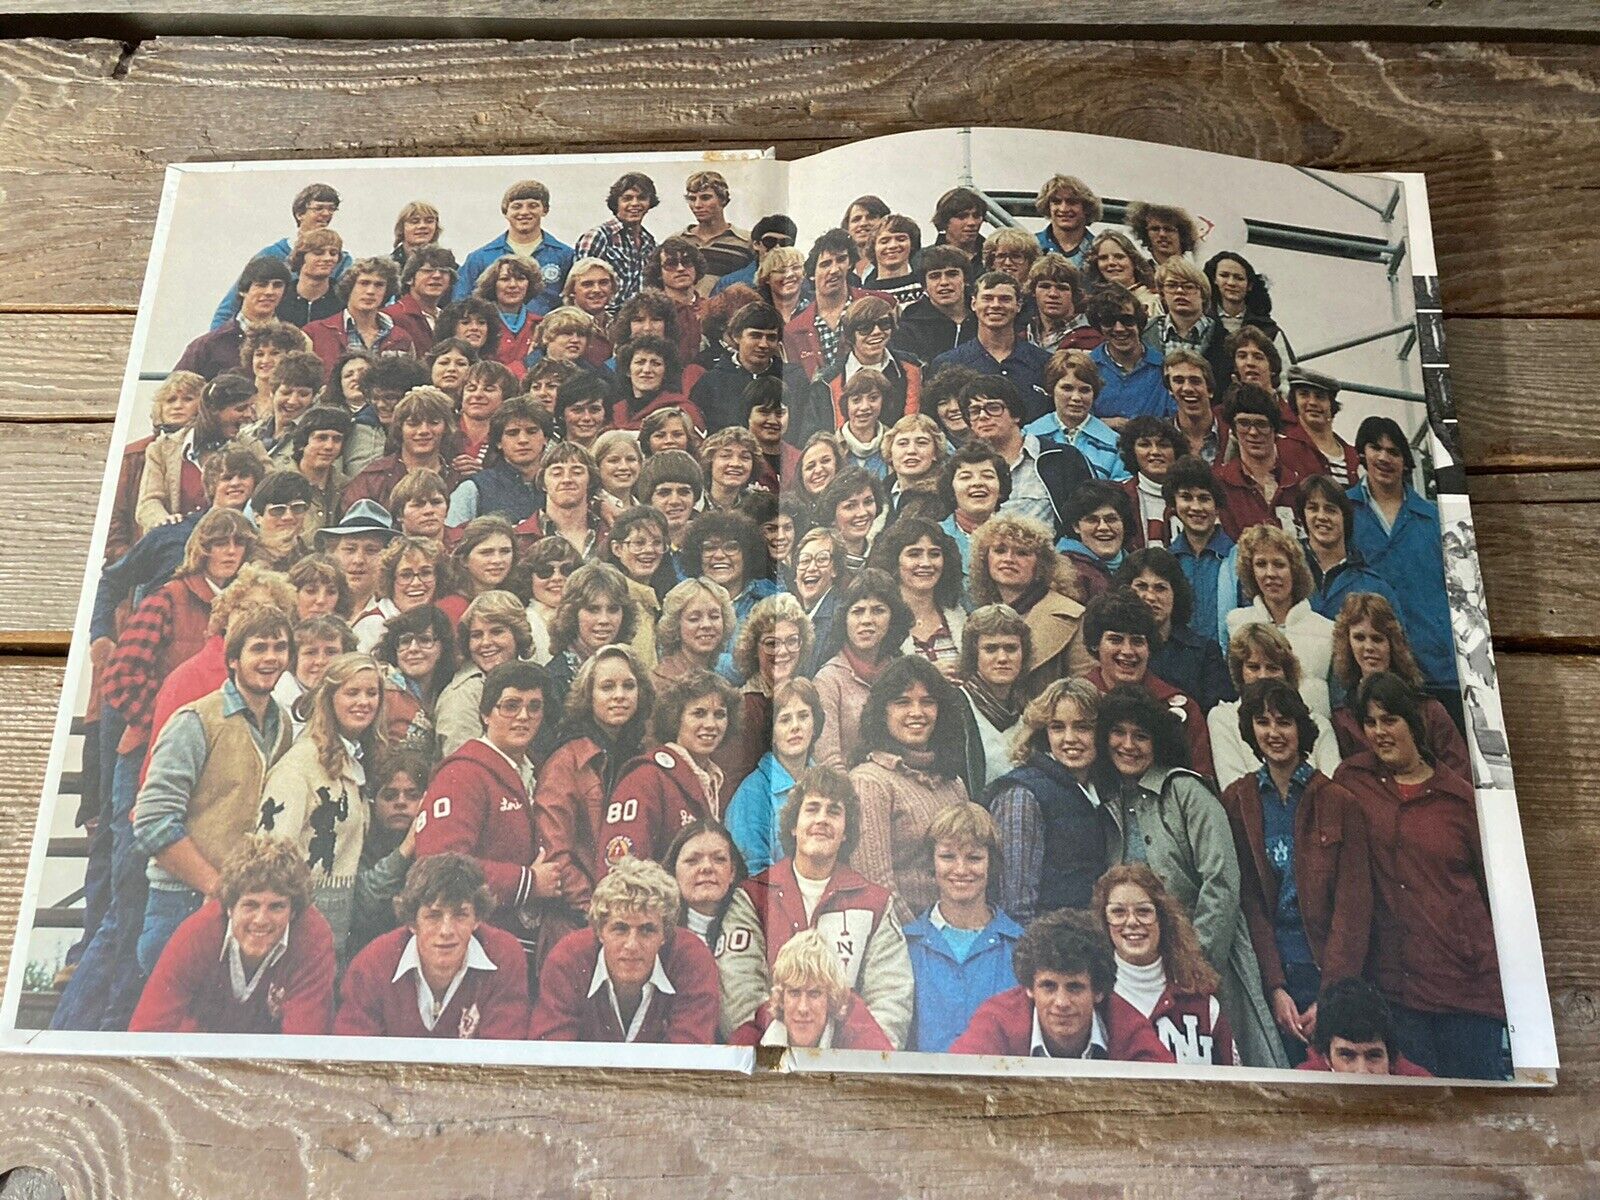 1980 New Holstein Huskies High School Yearbook Argonaut Wisconsin- No Signatures